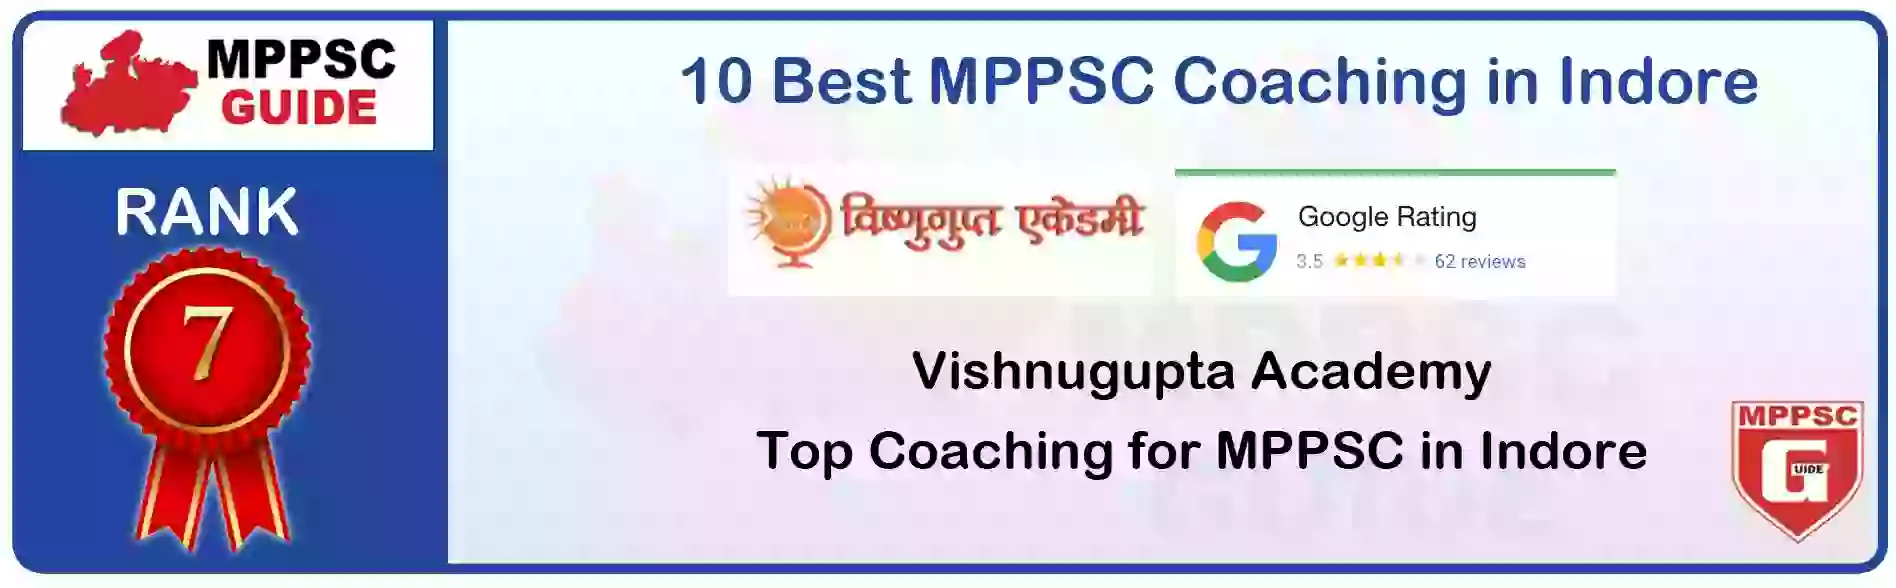 MPPSC Coaching in Chhindwara, MPPSC Coaching Institute In Chhindwara, Best MPPSC Coaching in Chhindwara, Top 10 MPPSC Coaching In Chhindwara, best mppsc coaching institute in chhindwara, MPPSC Coaching Classes In Chhindwara, MPPSC Online Coaching In Chhindwara, mppsc coaching in Chhindwara bhanwarkua